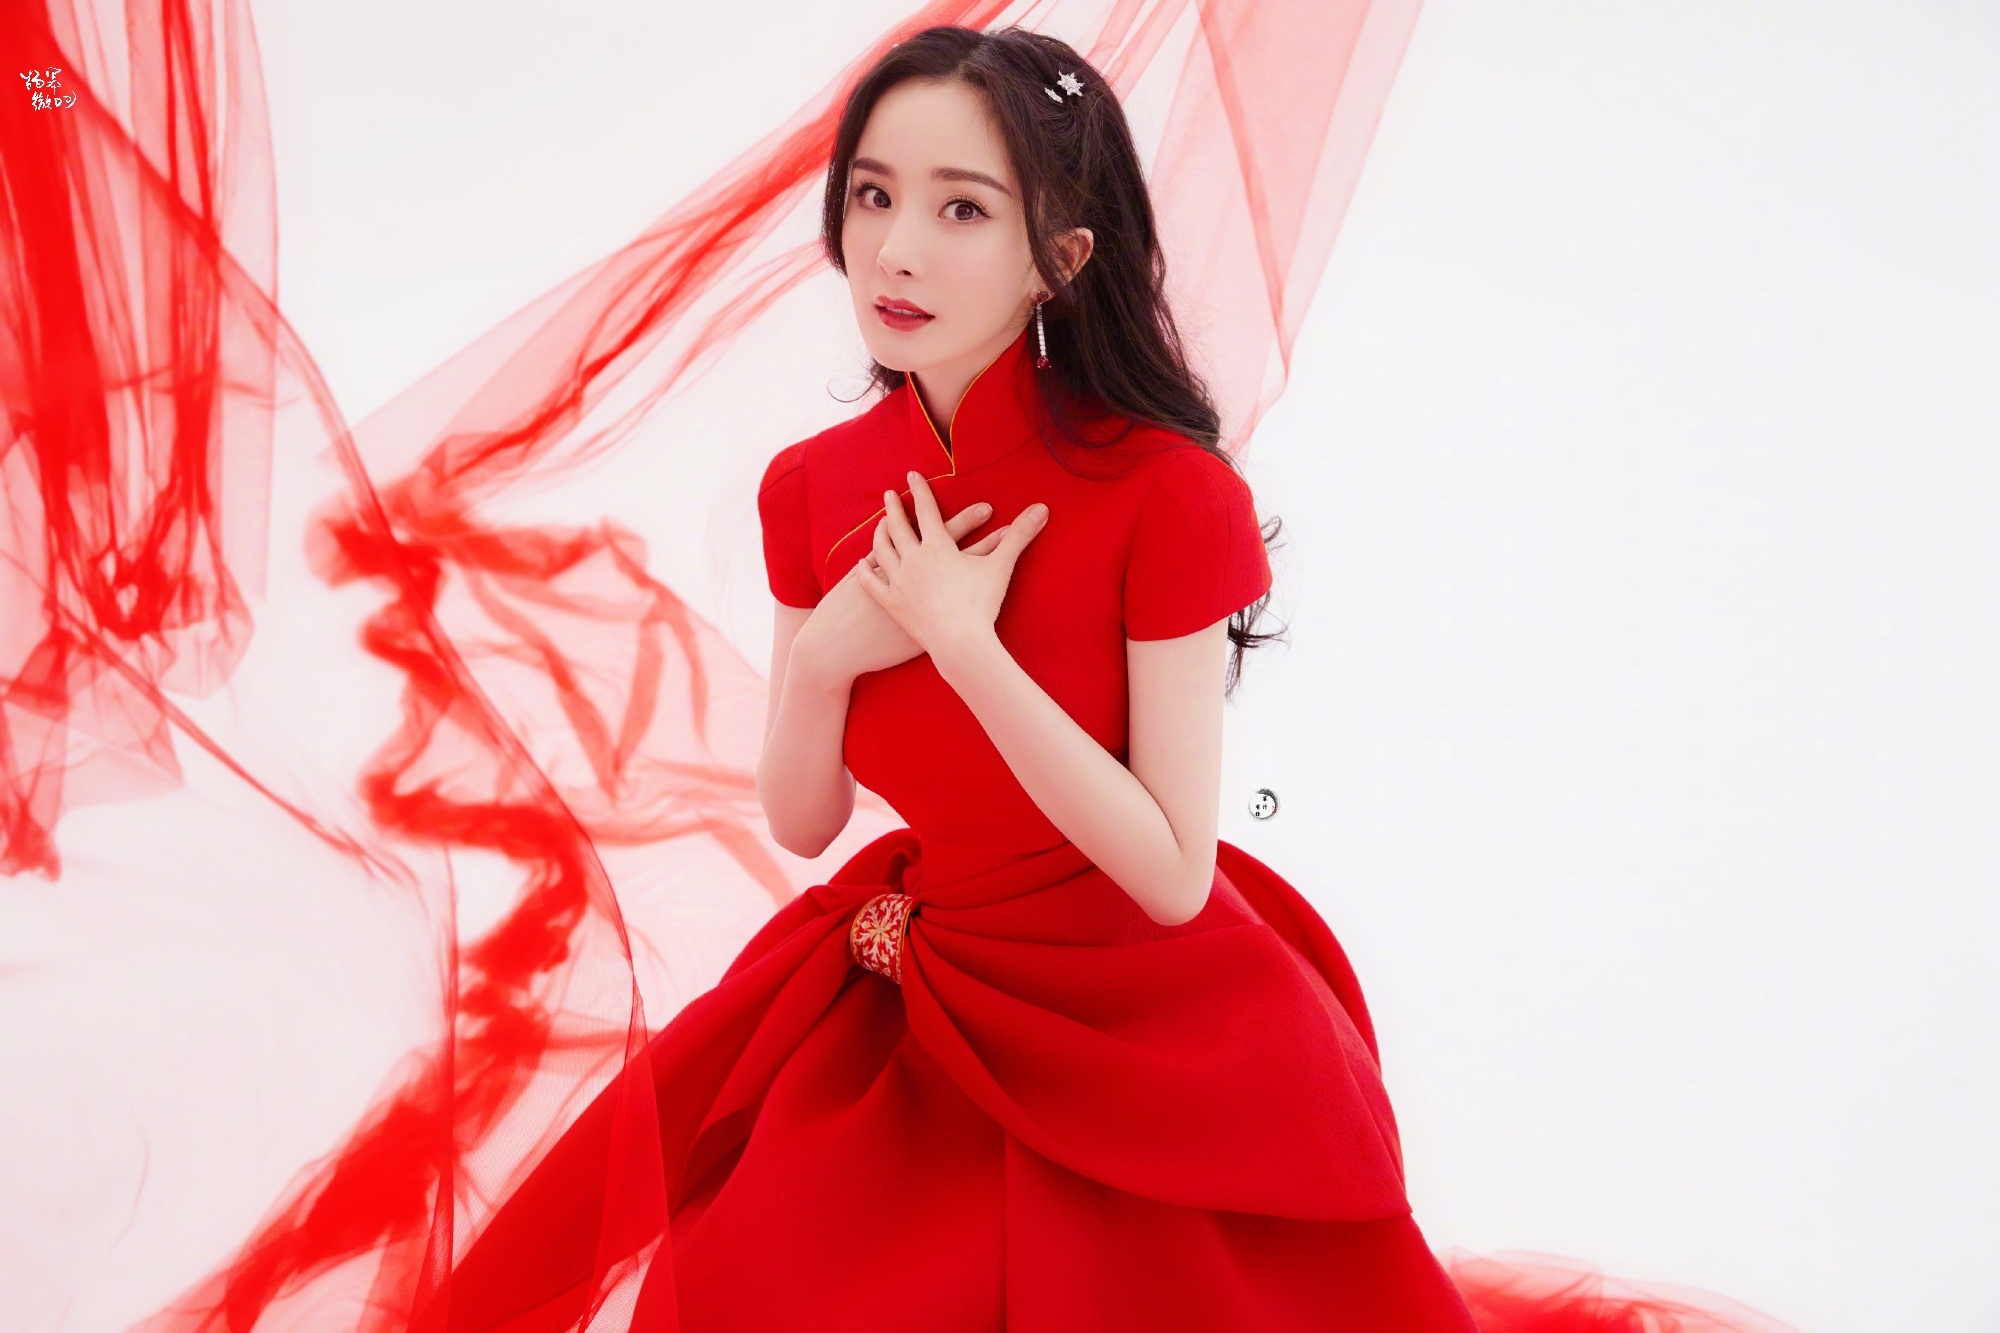 Chinese actress Zhou Dongyu poses at the Stella Mccartney fashion